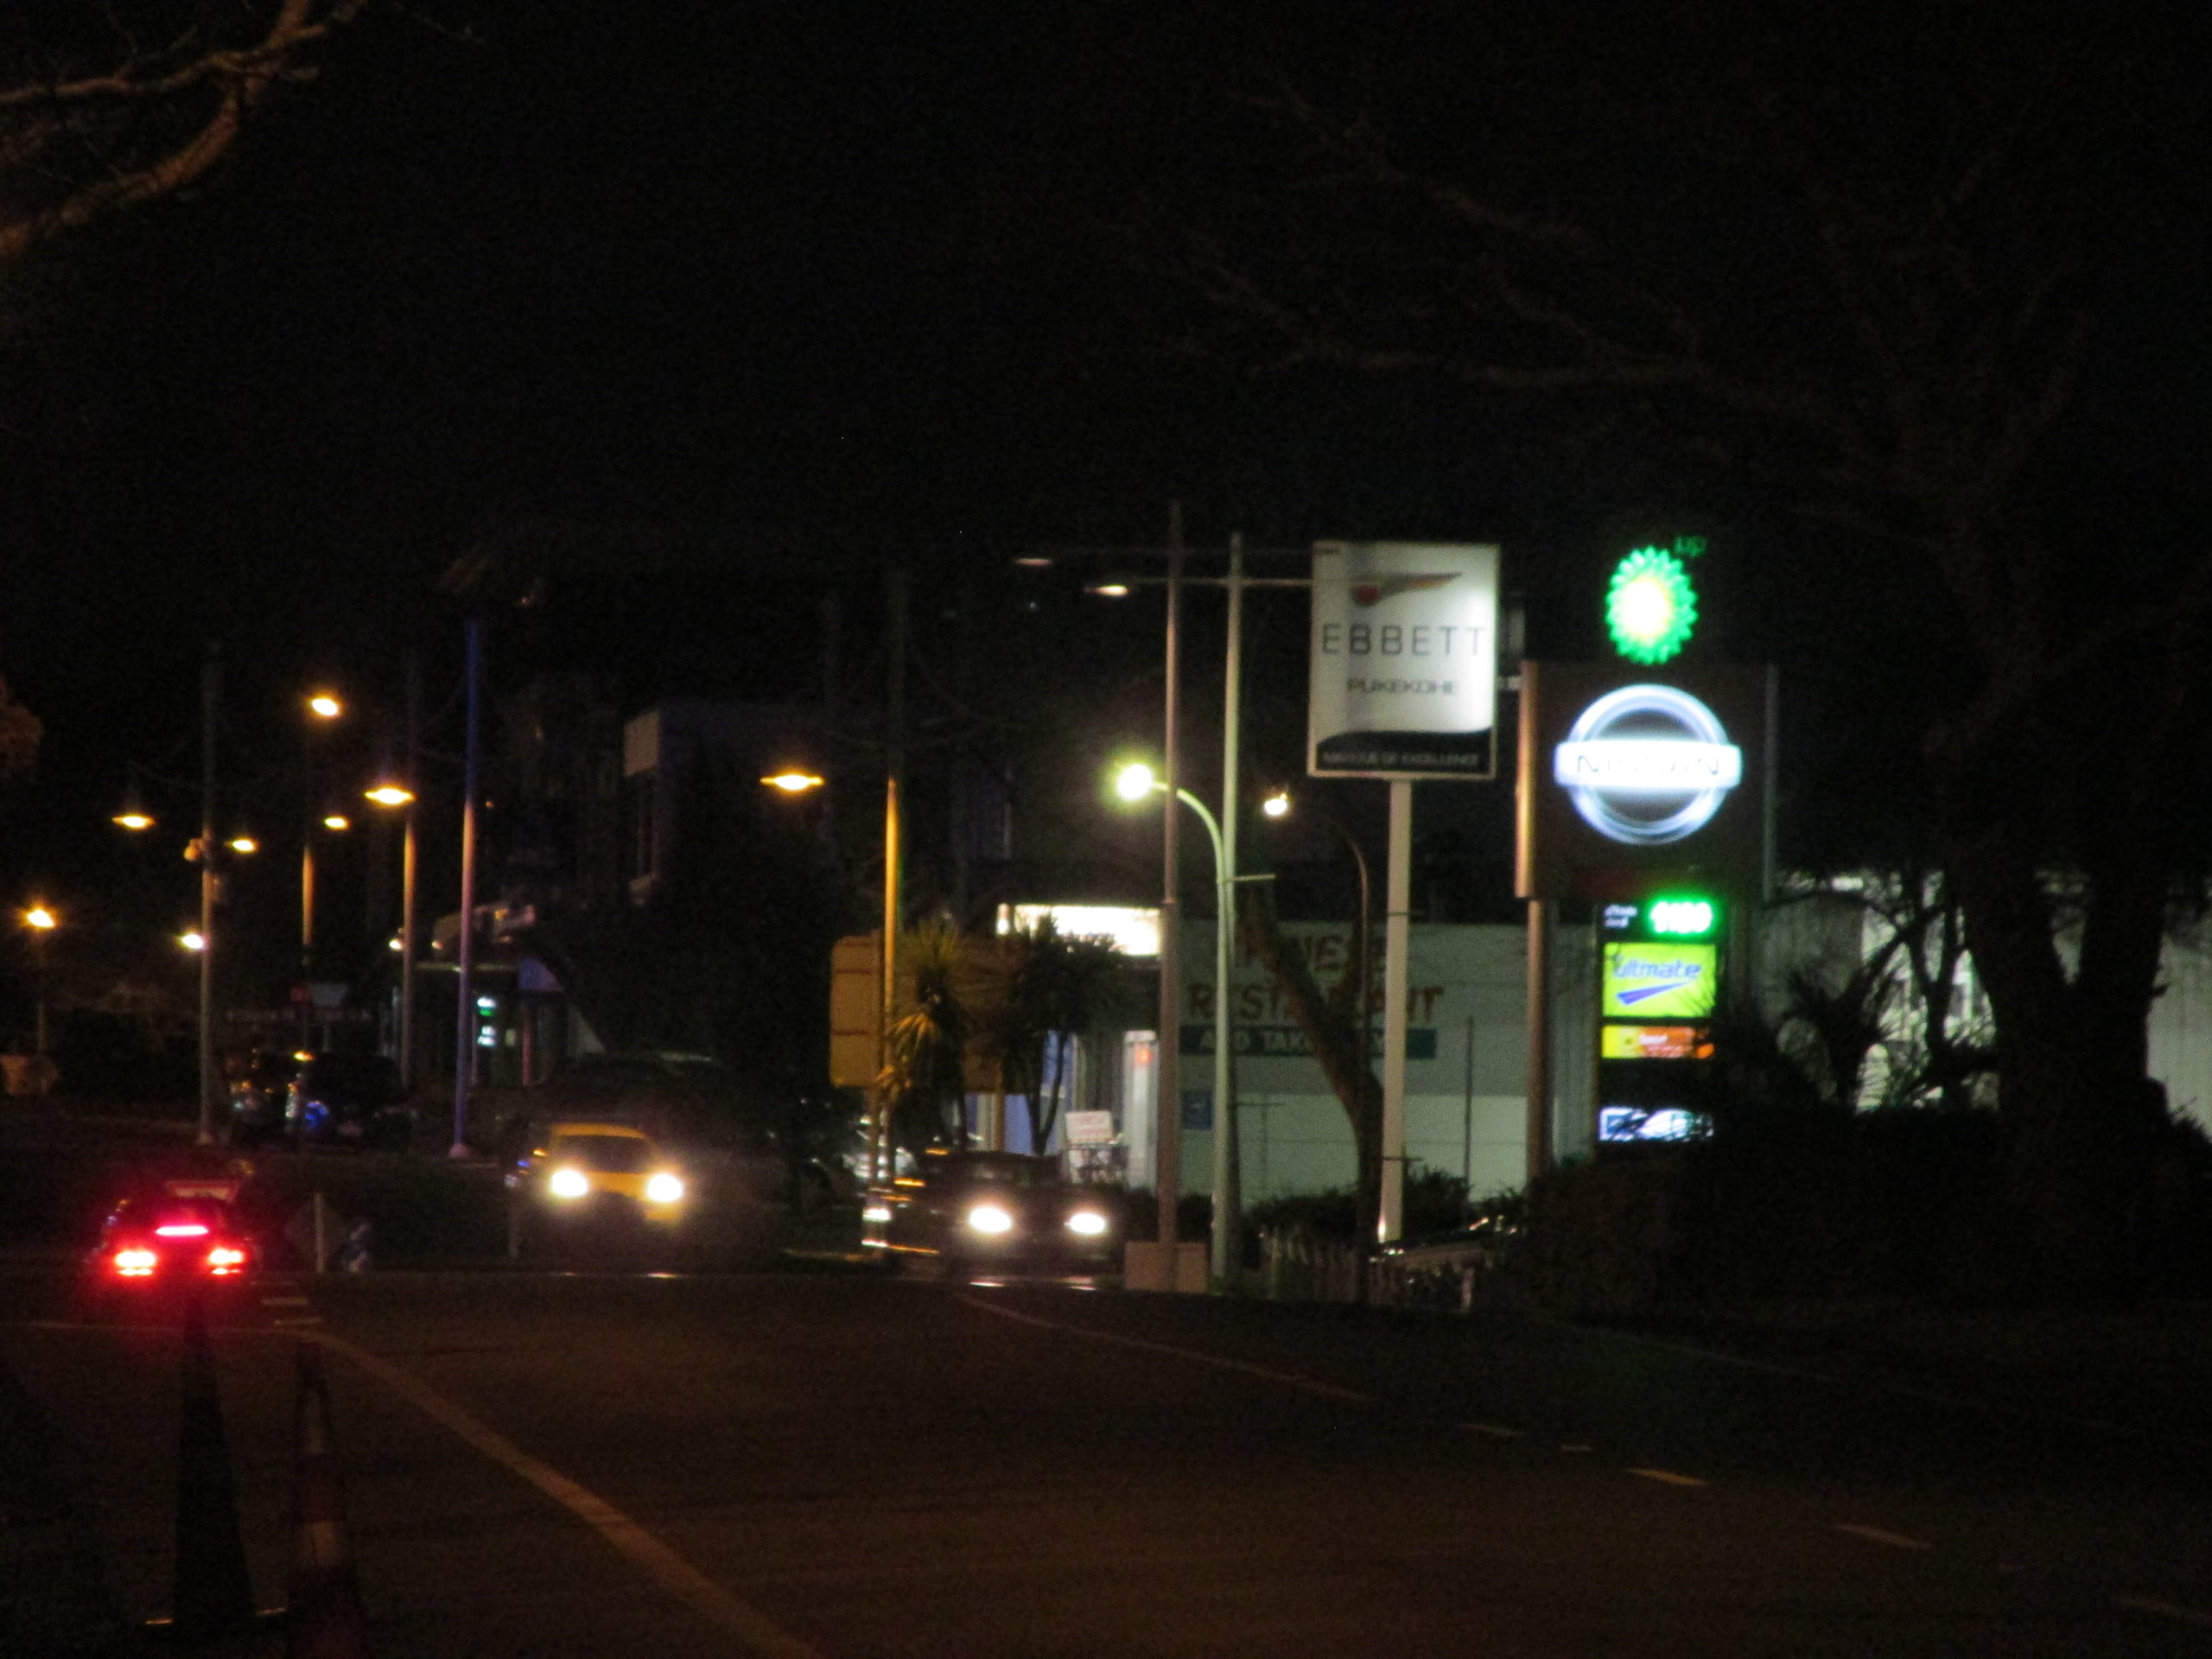 Town at night